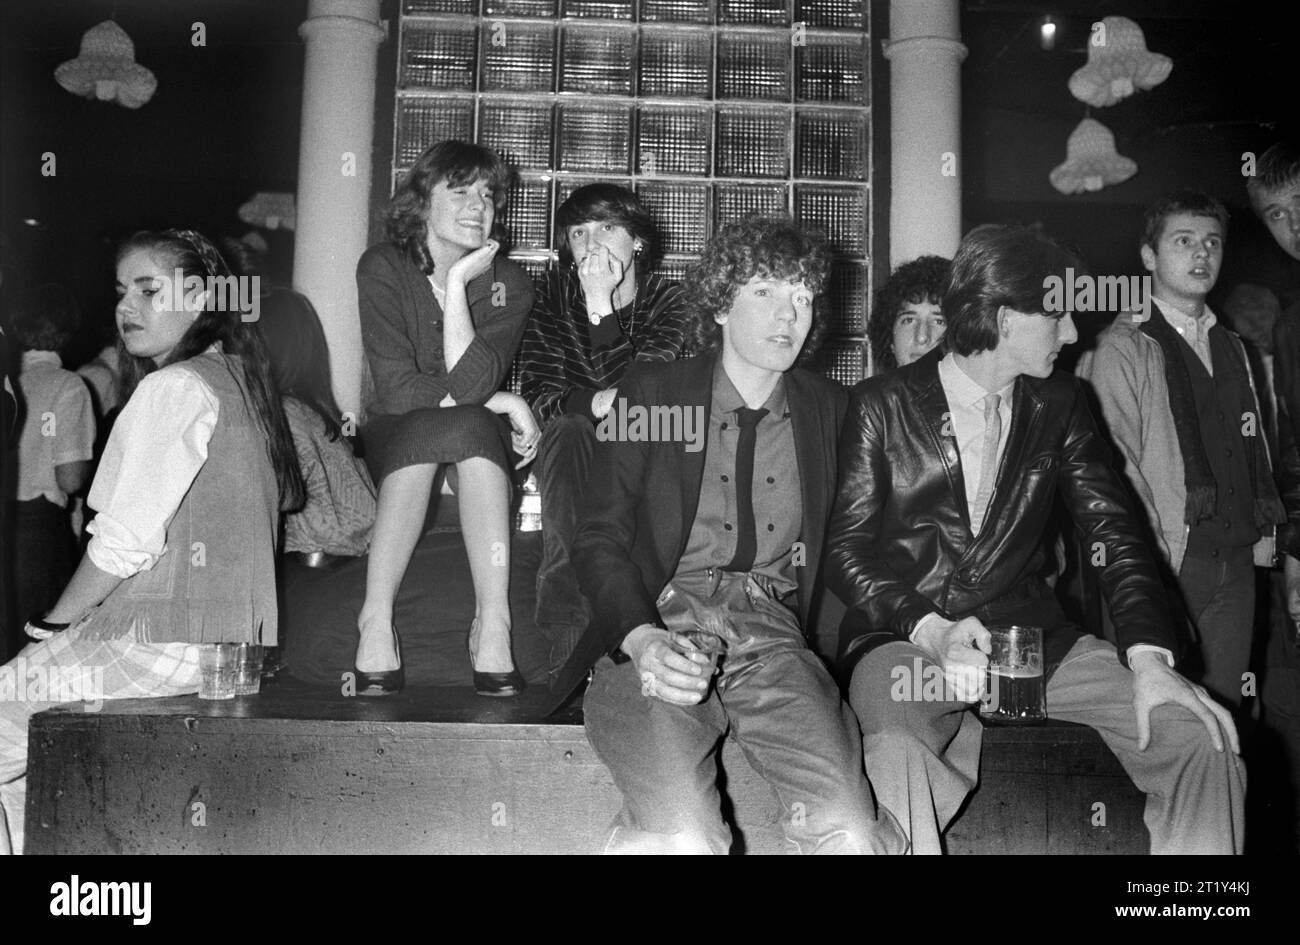 Teenagers Kings Road Chelsea night club 1980s Britain